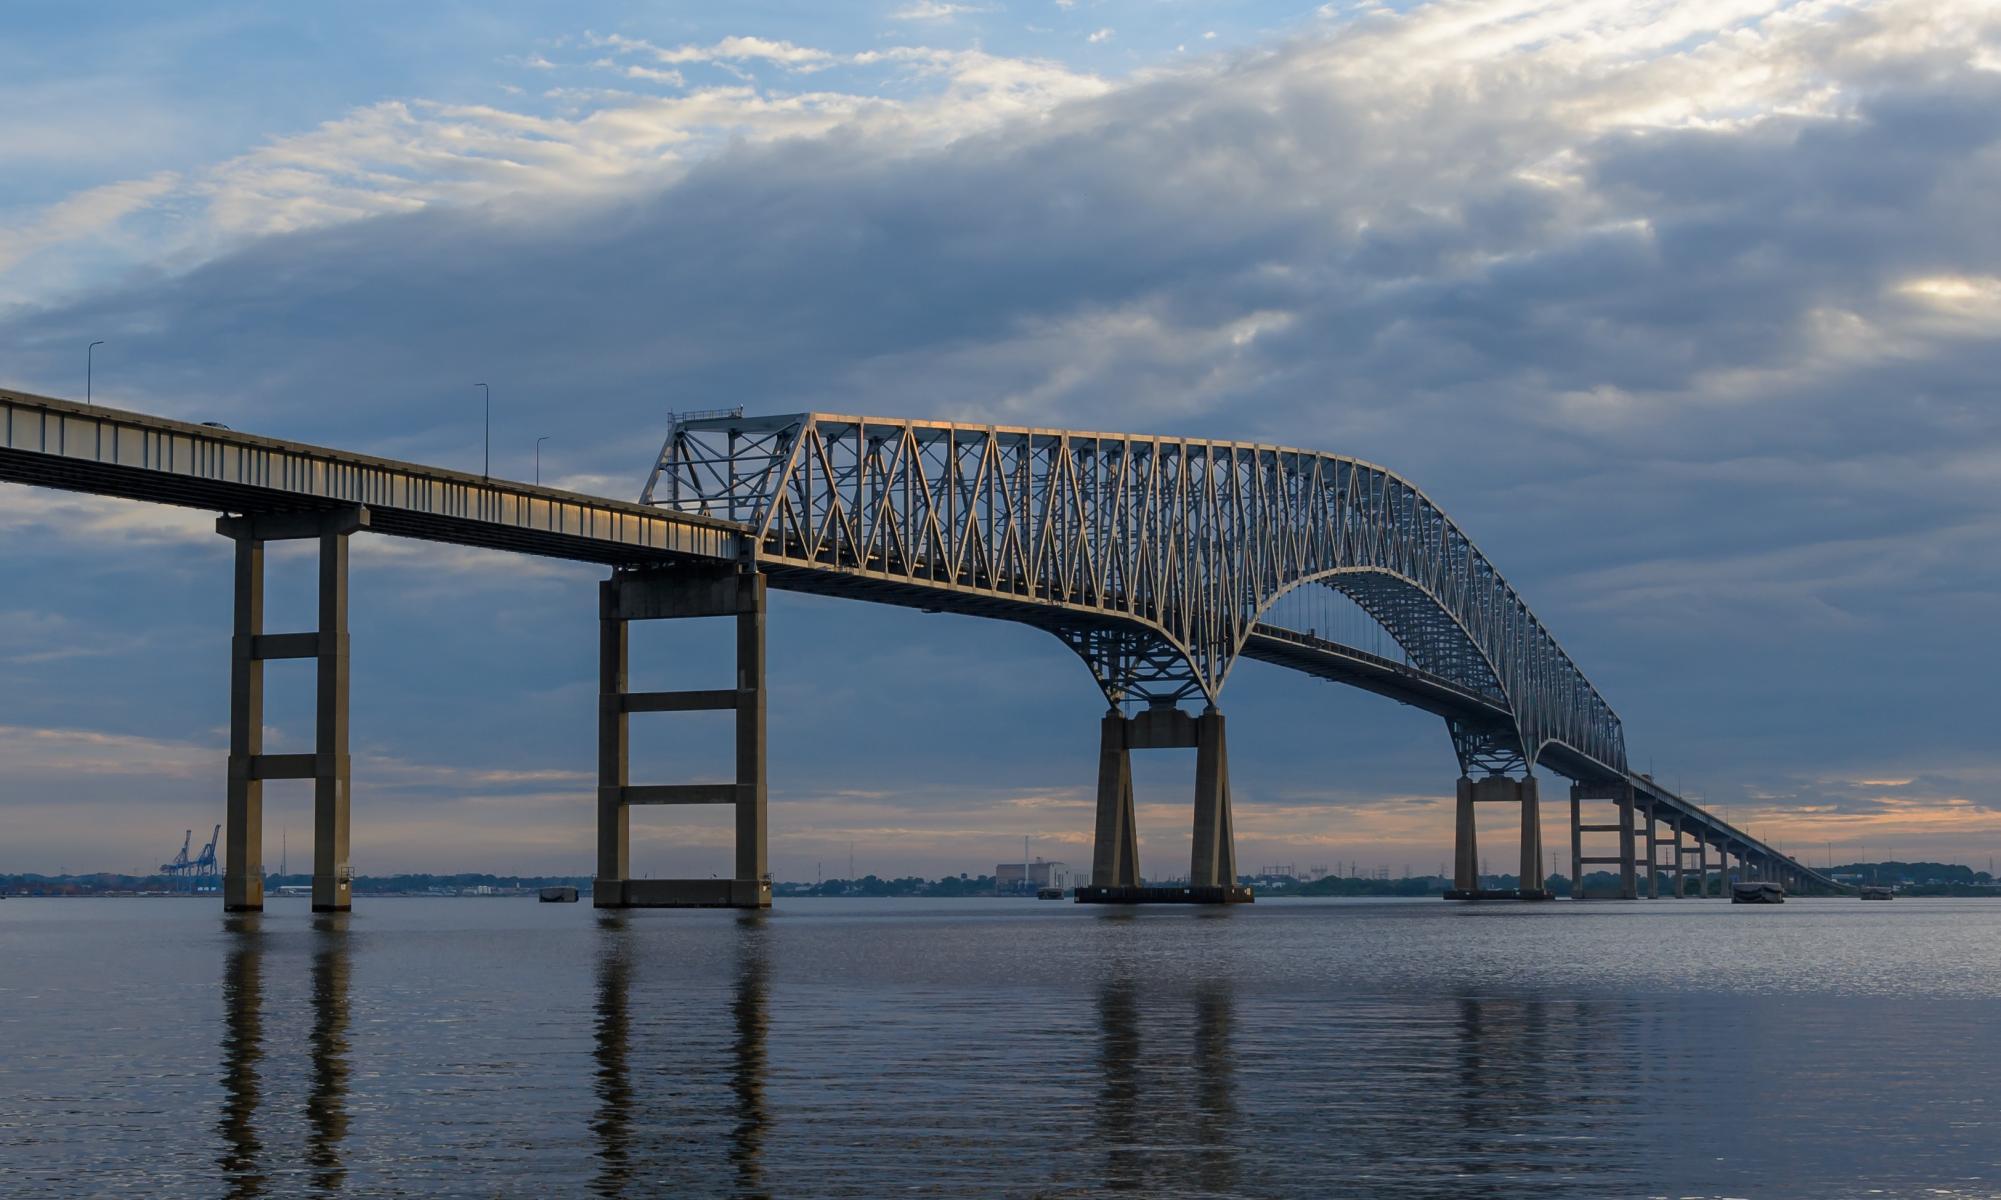 Bridge in Baltimore collapses